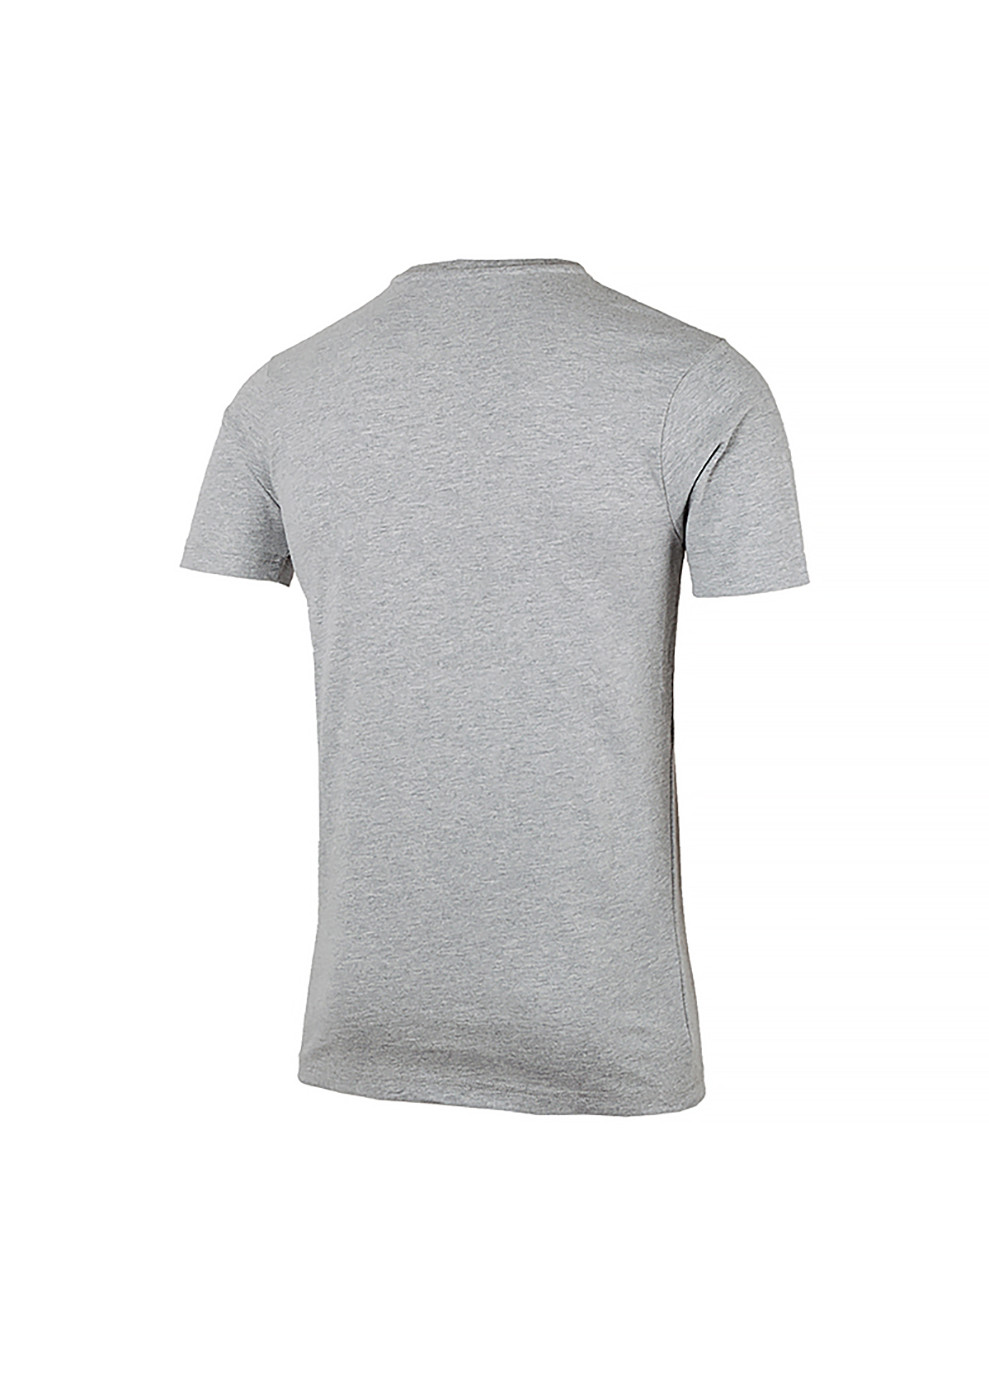 Серая мужская футболка voodoo серый s (shb06835-grey-marl s) Ellesse